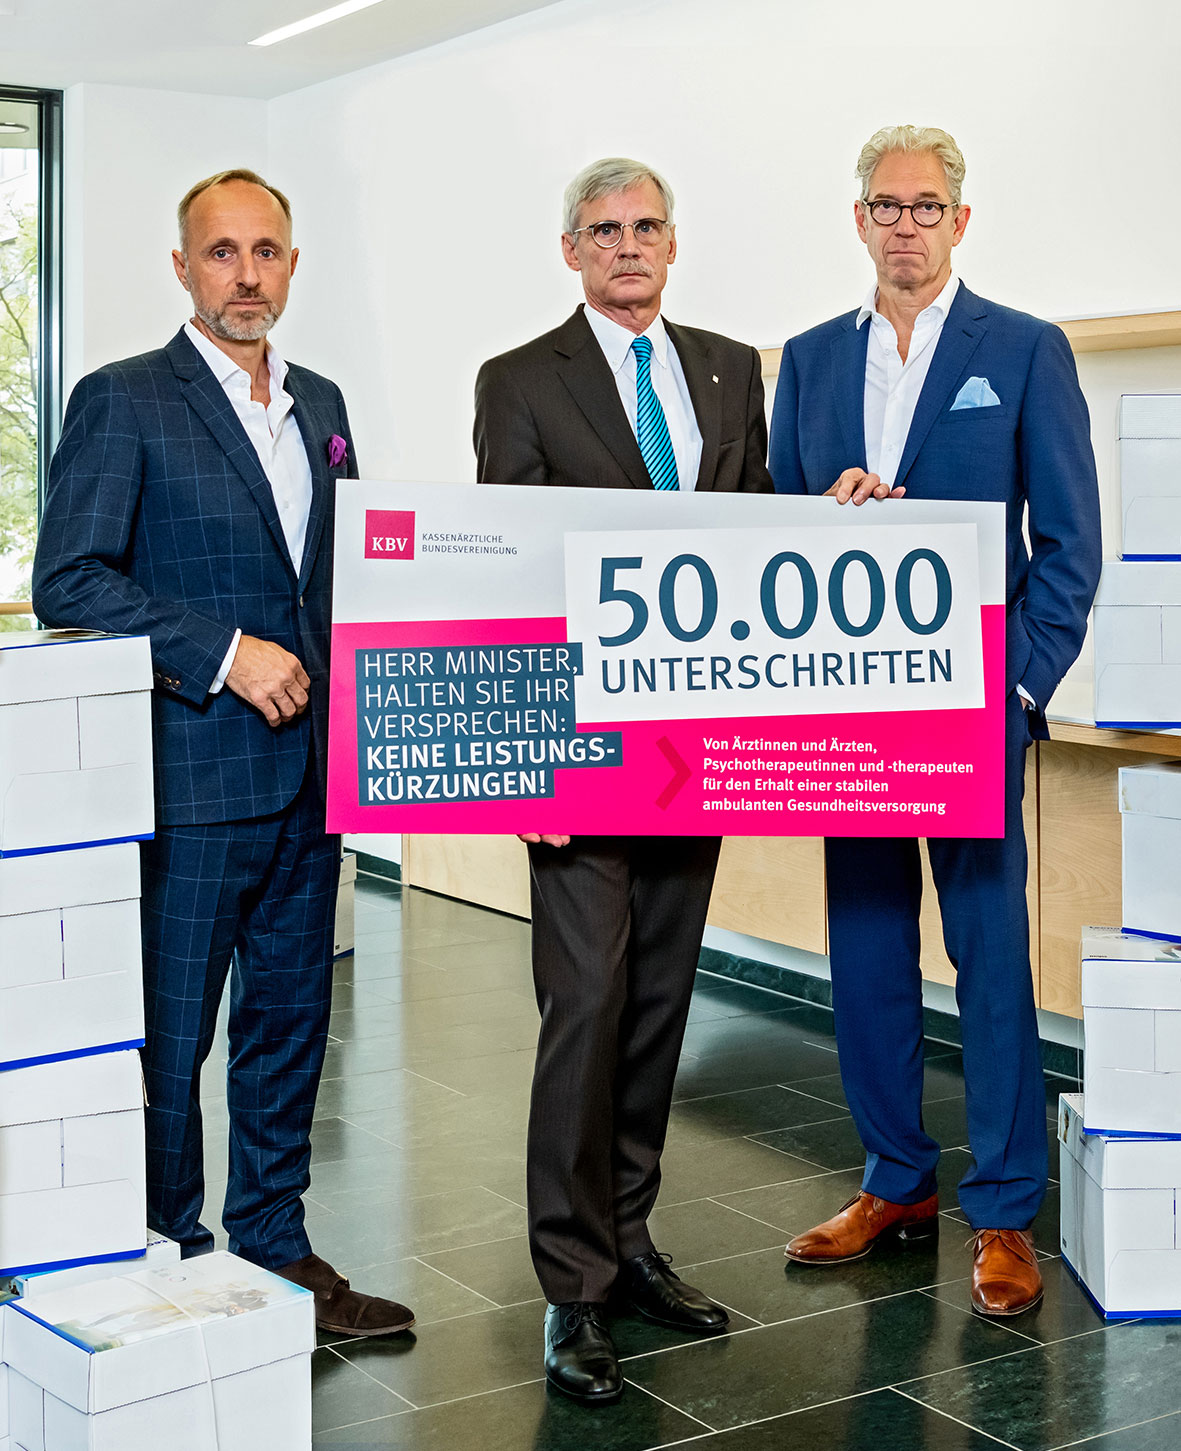 Das Foto zeigt die KBV-Vorstände Dr. Andreas Gassen, Dr. Thomas Kriedel und Dr. Stephan Hofmeister mit der symbolischen Präsentation der Zahl von 50.000 Unterschriften.